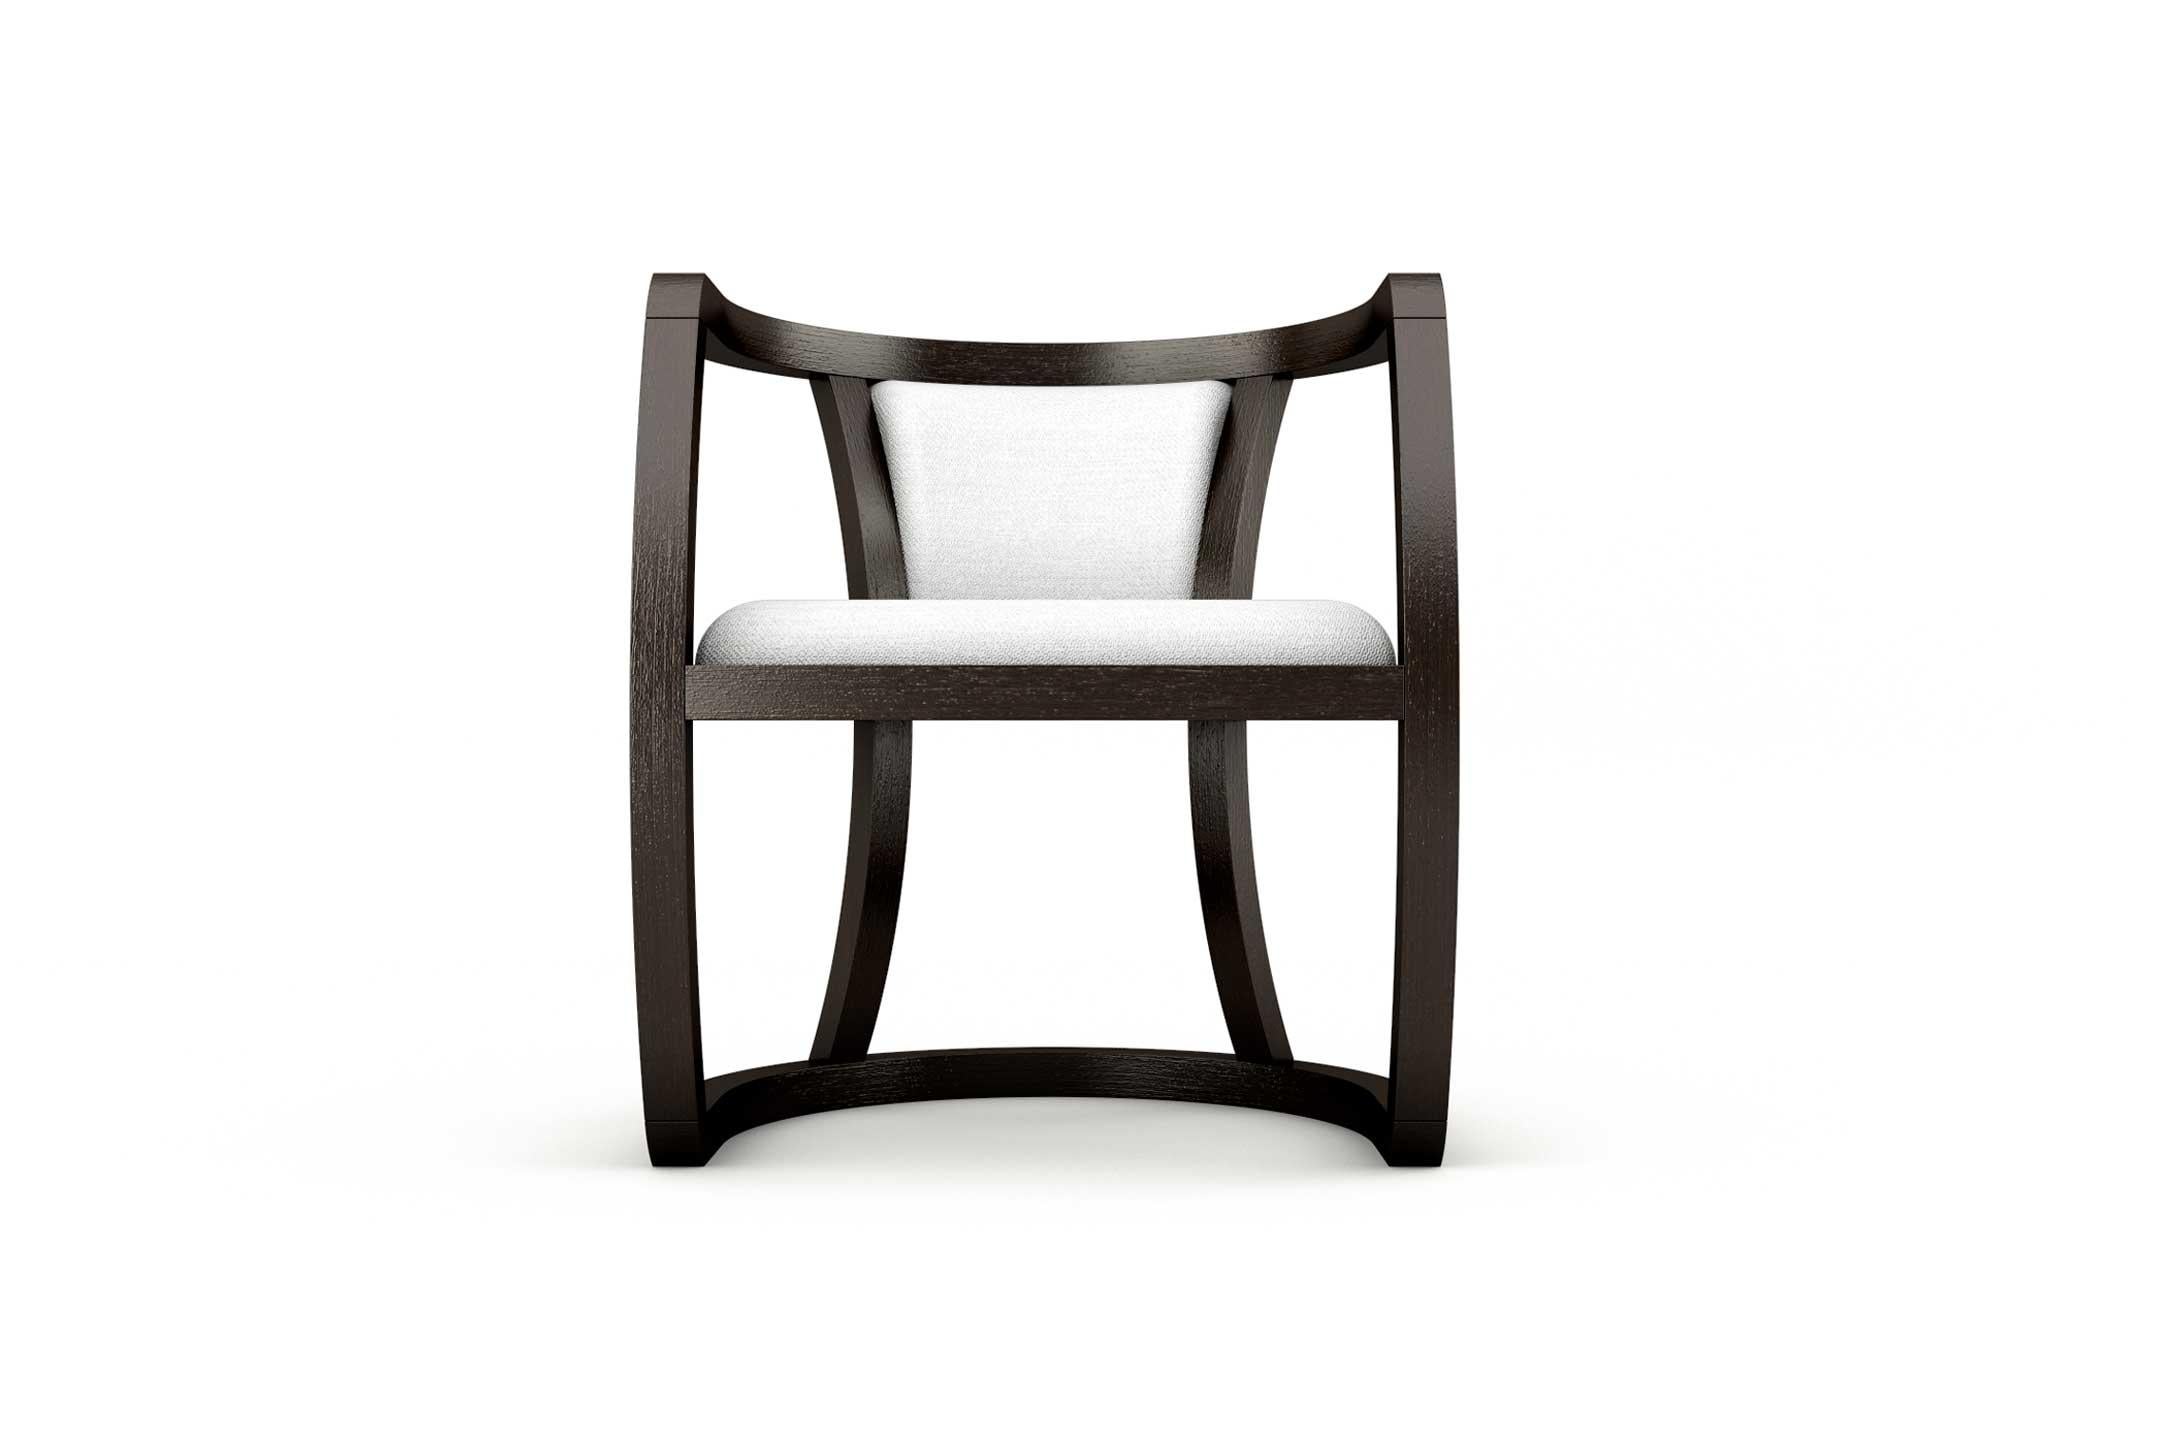 Der Sessel Hokkaido verleiht der Umgebung einen orientalischen Stil mit seinem minimalistischen und schlichten Design, wie schnelle Striche über eine leere Leinwand. Seine Struktur besteht aus gebeiztem Holz mit einem gepolsterten Schaumstoffsitz,